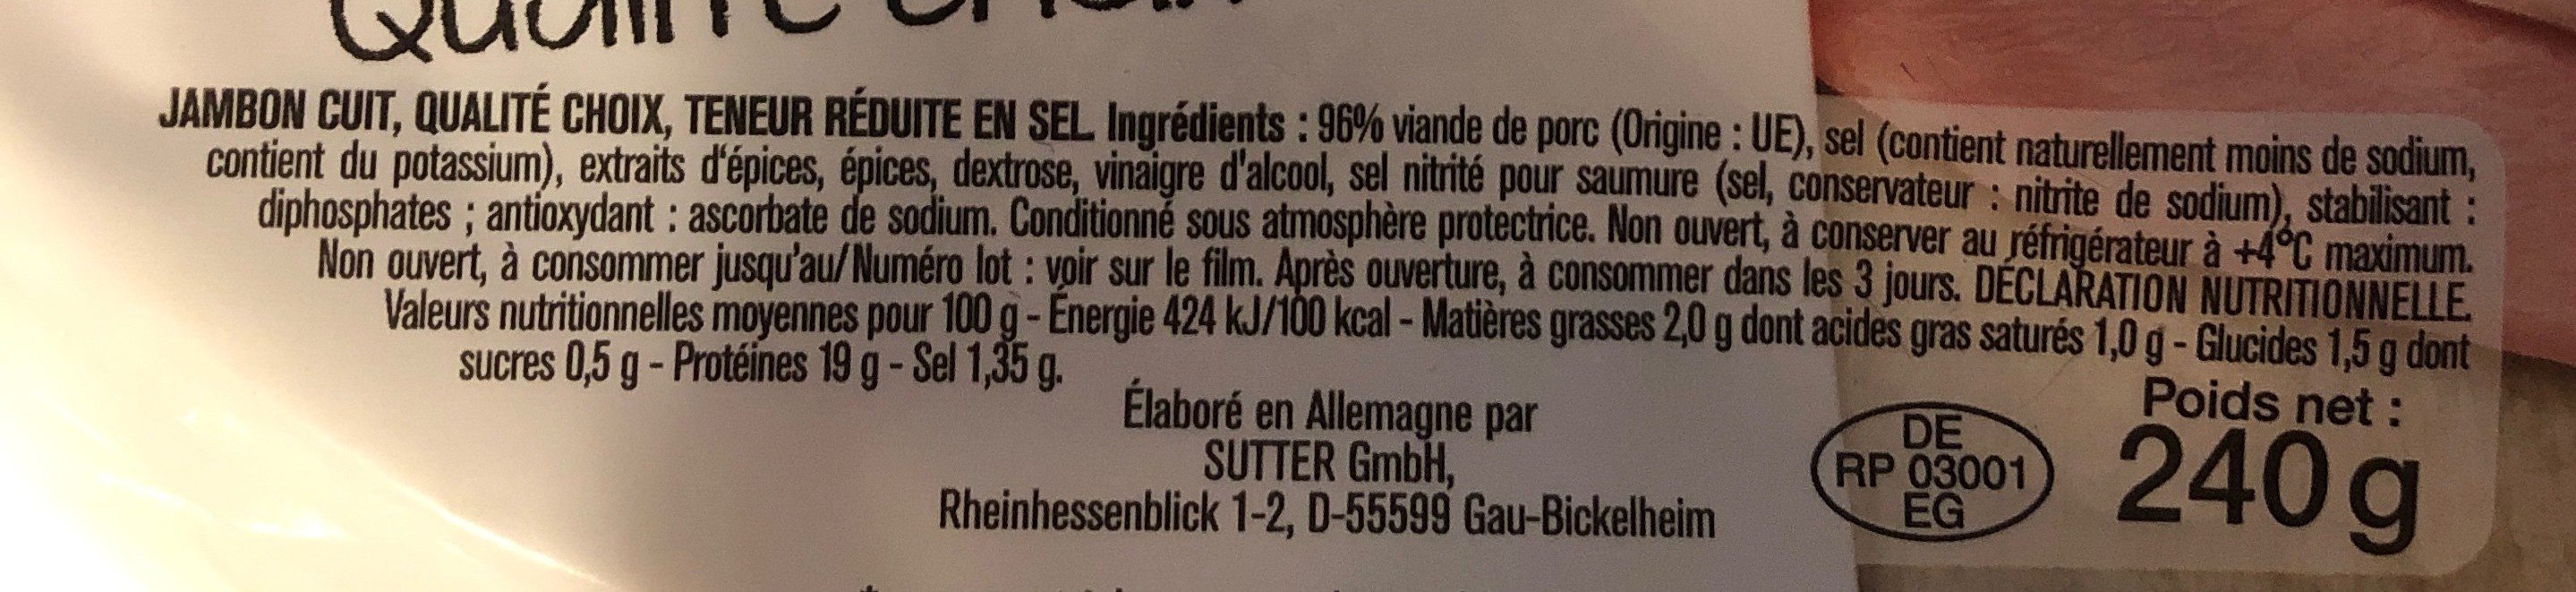 Jambon de Paris -25% de sel - Ingrédients